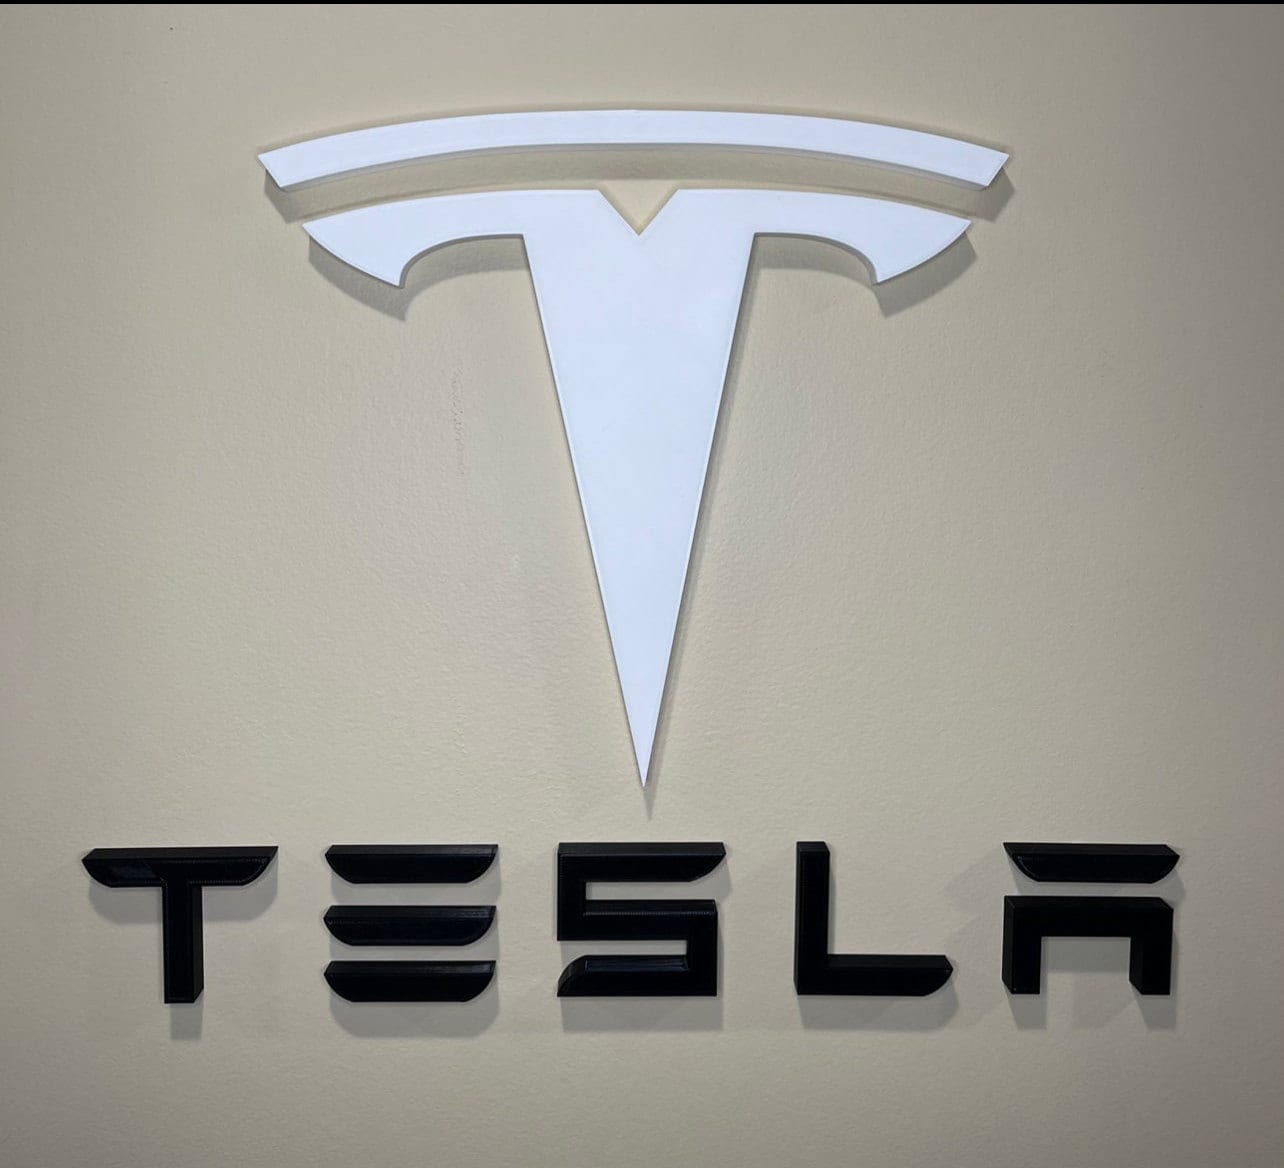 Tesla Wall Logo-Big-white or red